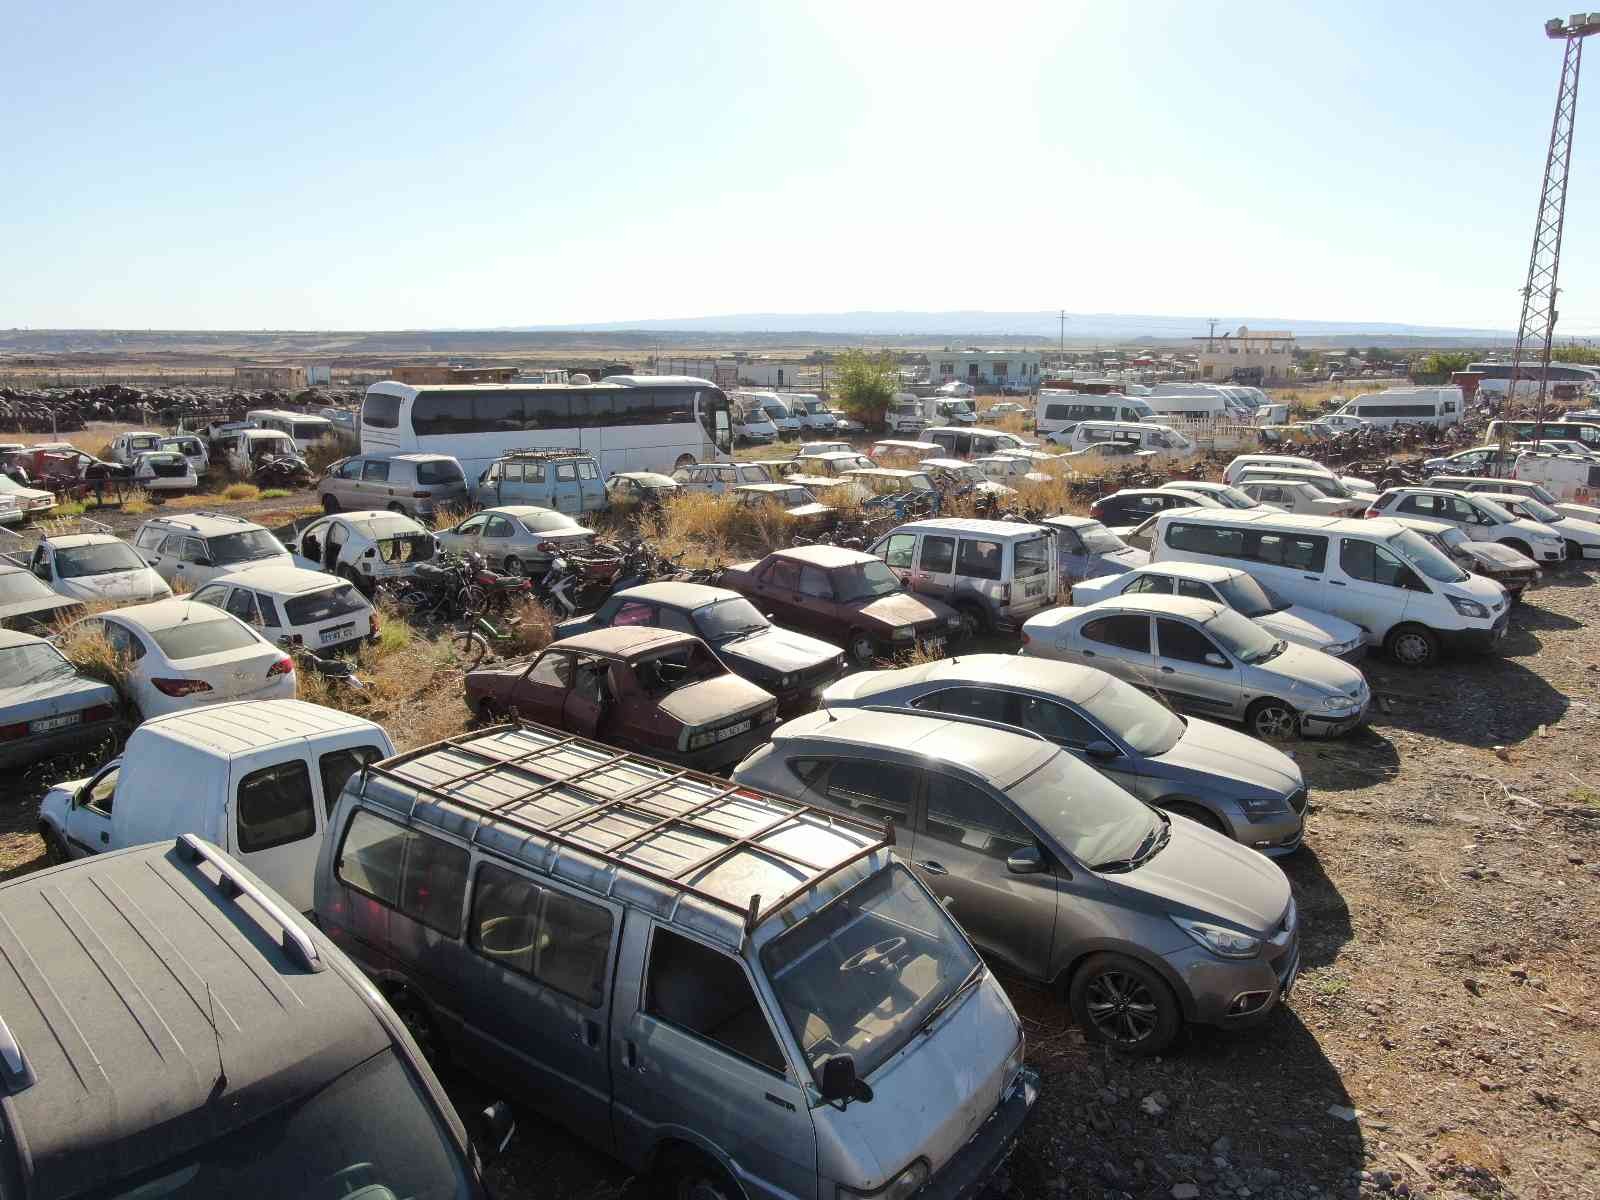 Milyonlarca TL değerinde araçlar toprağa gömülüyor #diyarbakir